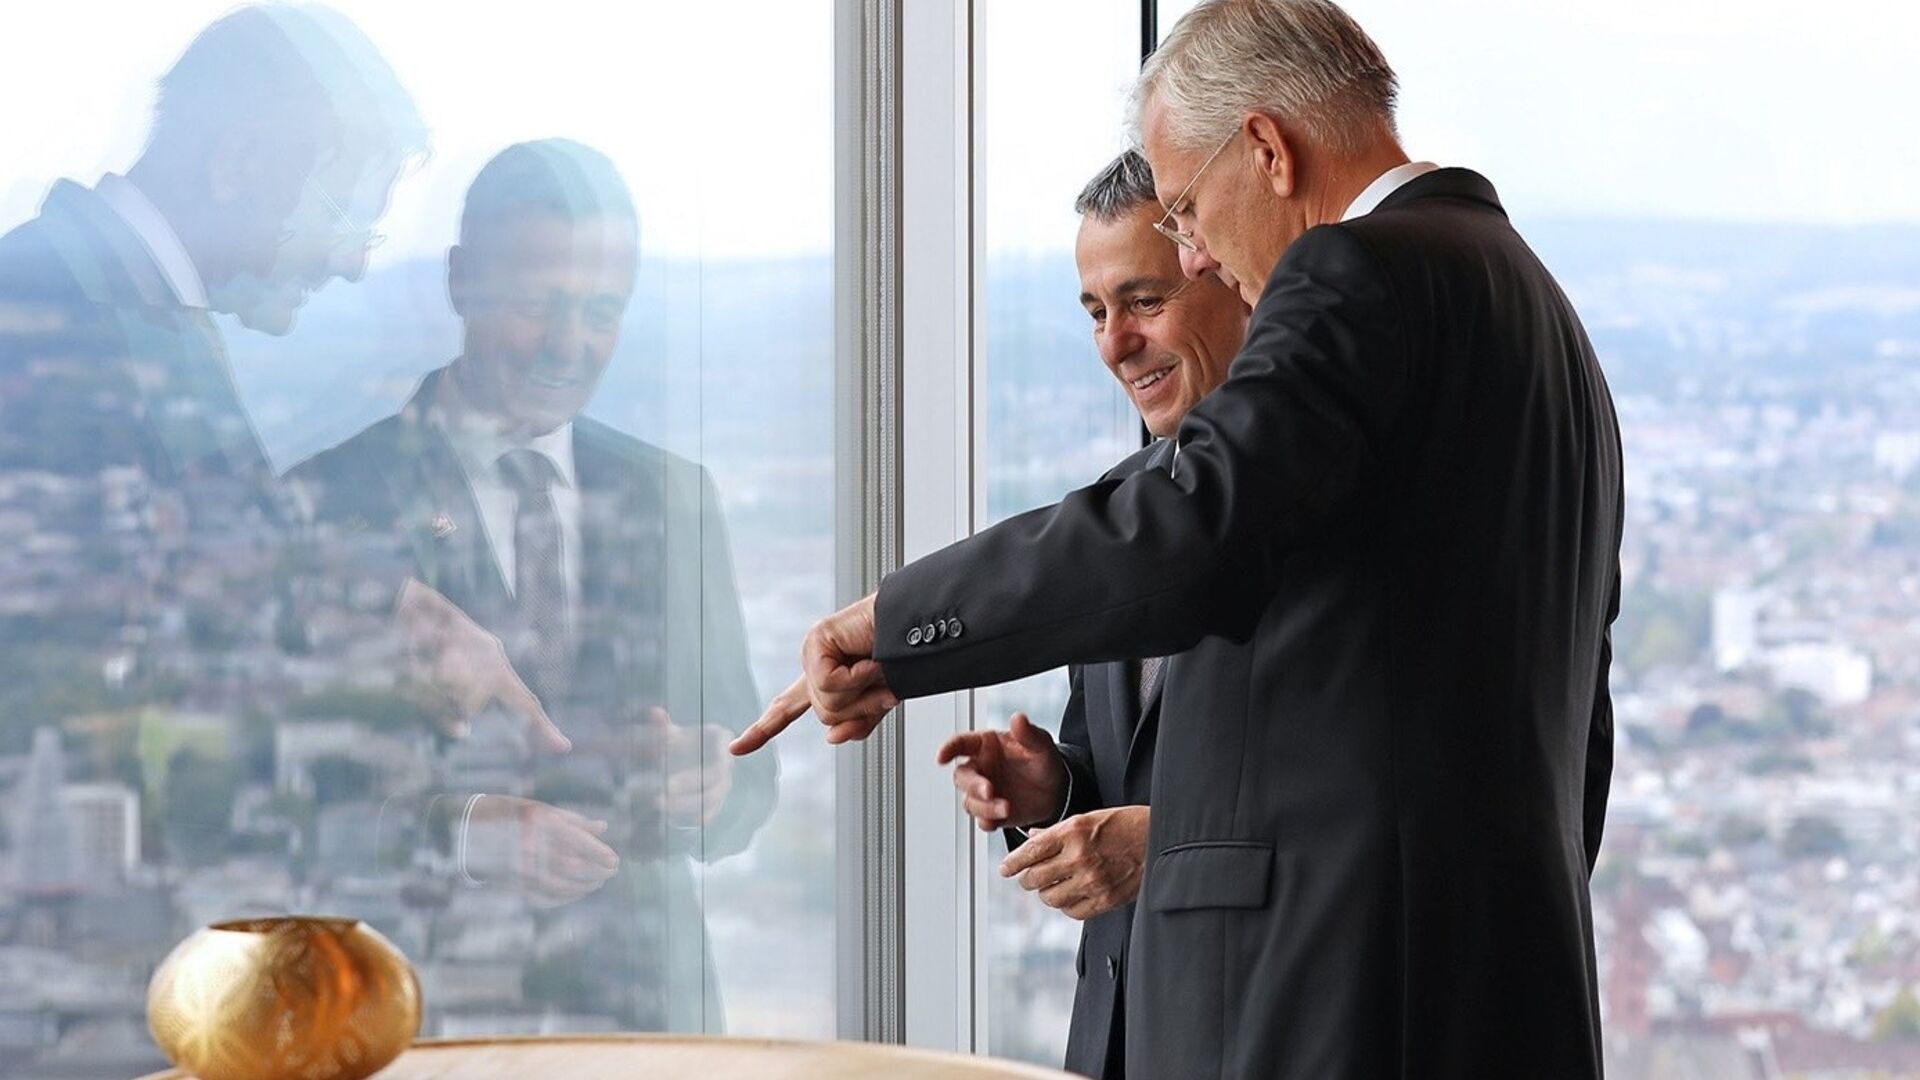 Игнацио Касис, претседател на Швајцарската конфедерација и Кристоф Франц, претседател на Roche Group, на инаугурацијата на кулата 2 на локацијата Базел на 2 септември 2022 година